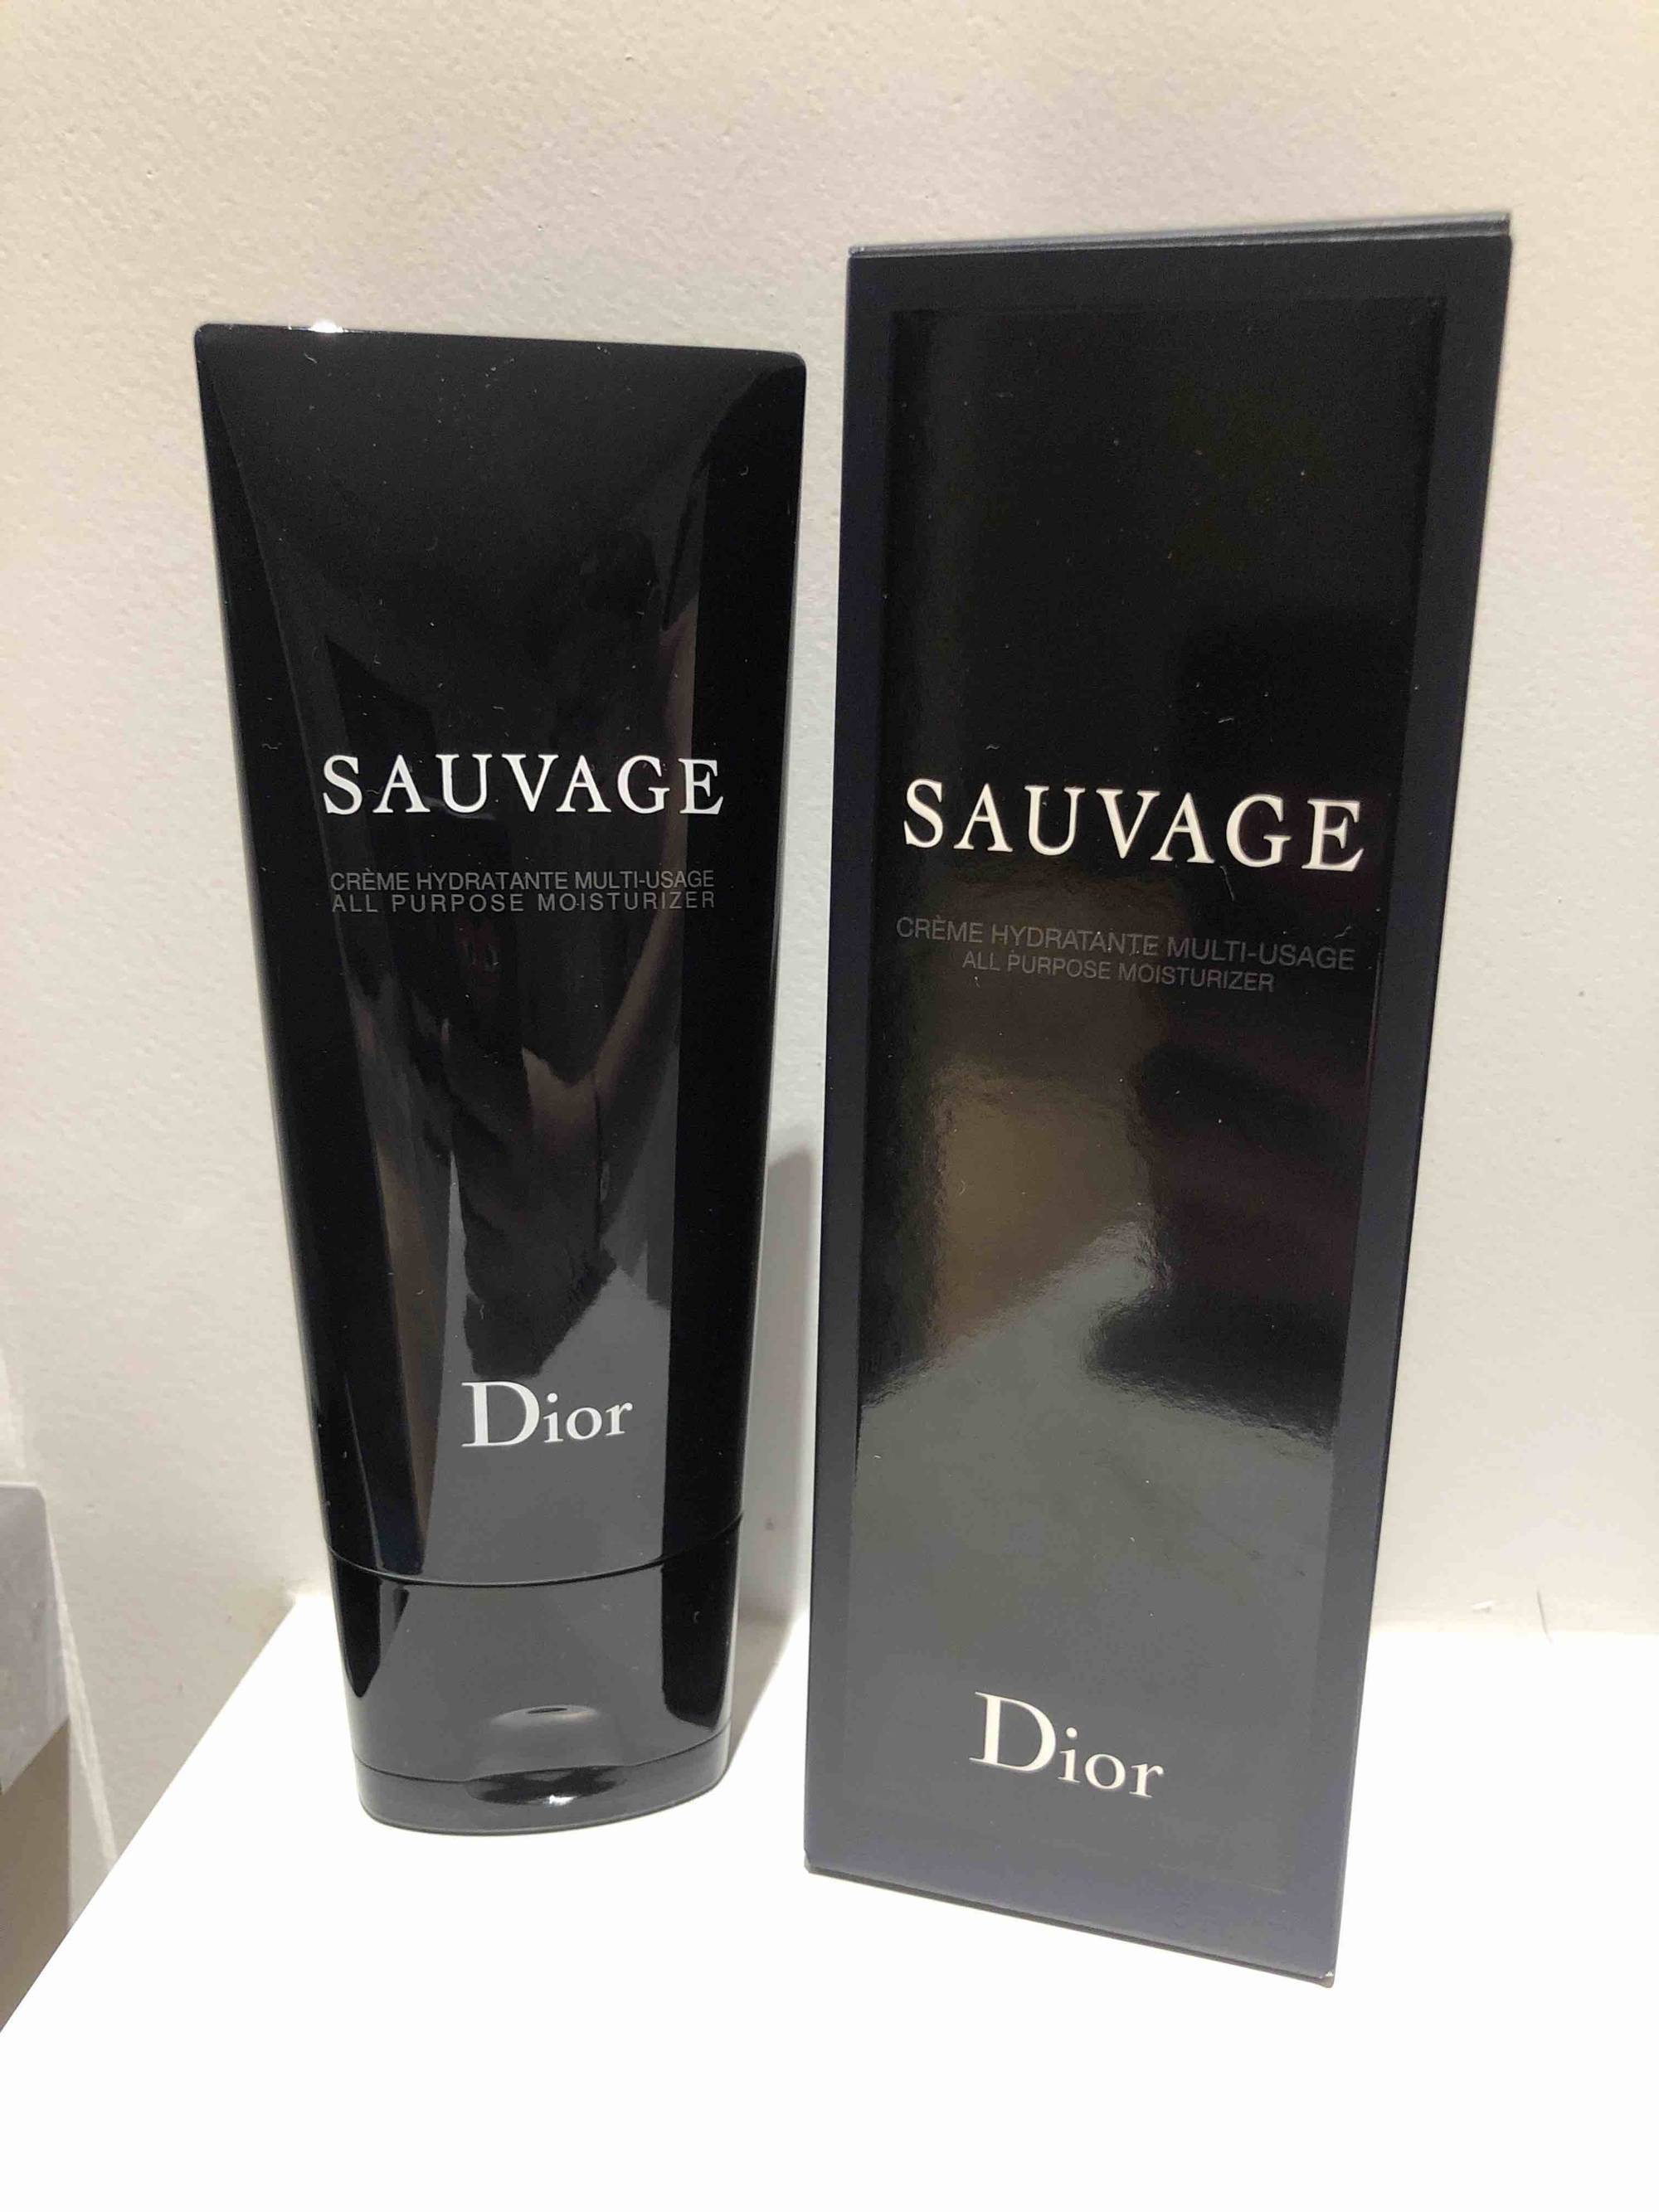 DIOR - Sauvage - Crème hydratante multi-usage 